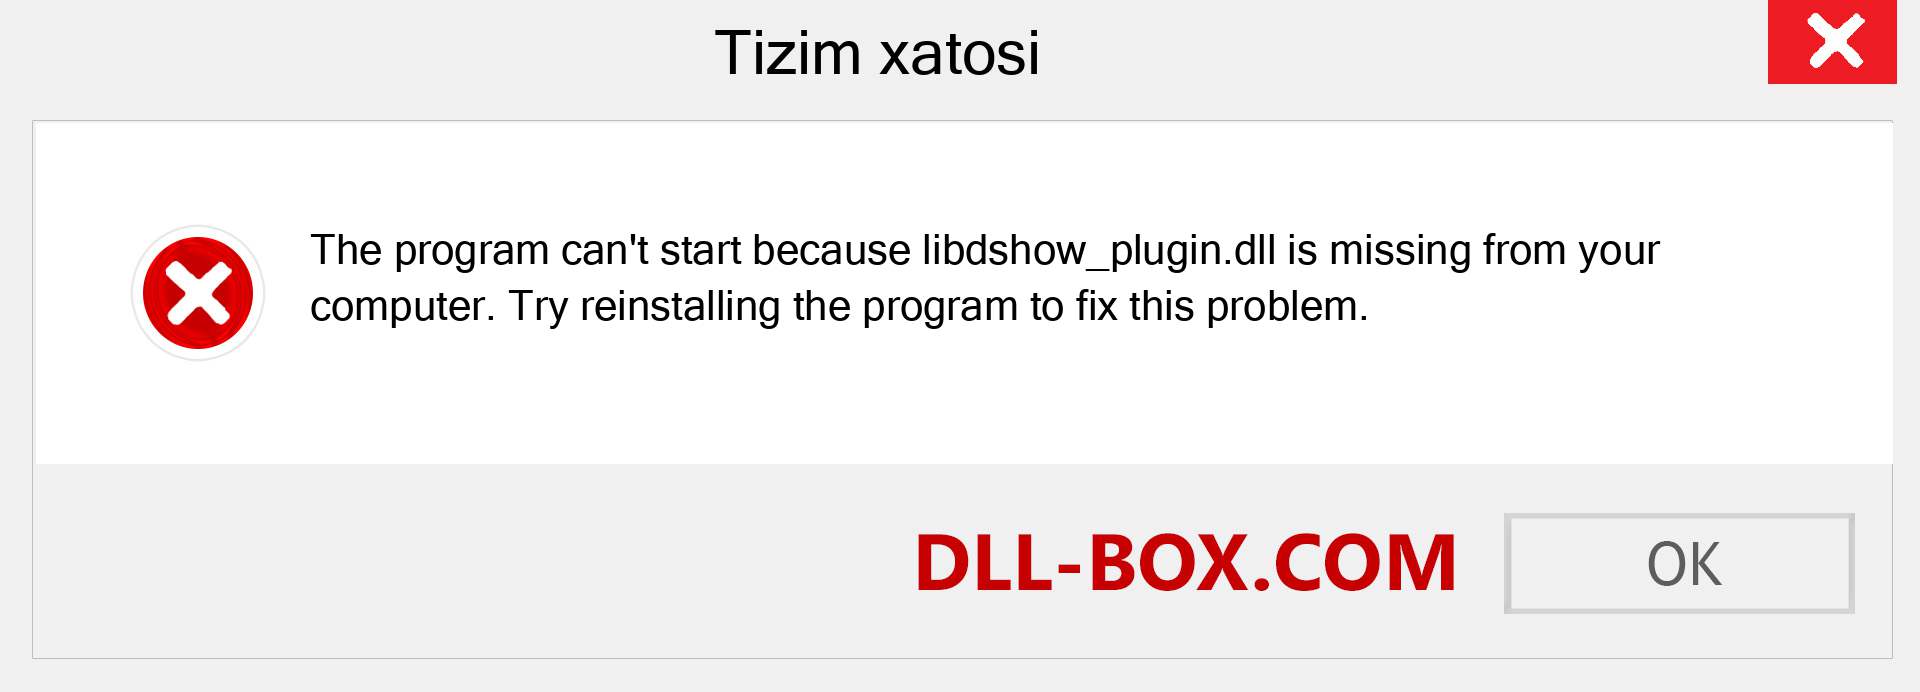 libdshow_plugin.dll fayli yo'qolganmi?. Windows 7, 8, 10 uchun yuklab olish - Windowsda libdshow_plugin dll etishmayotgan xatoni tuzating, rasmlar, rasmlar